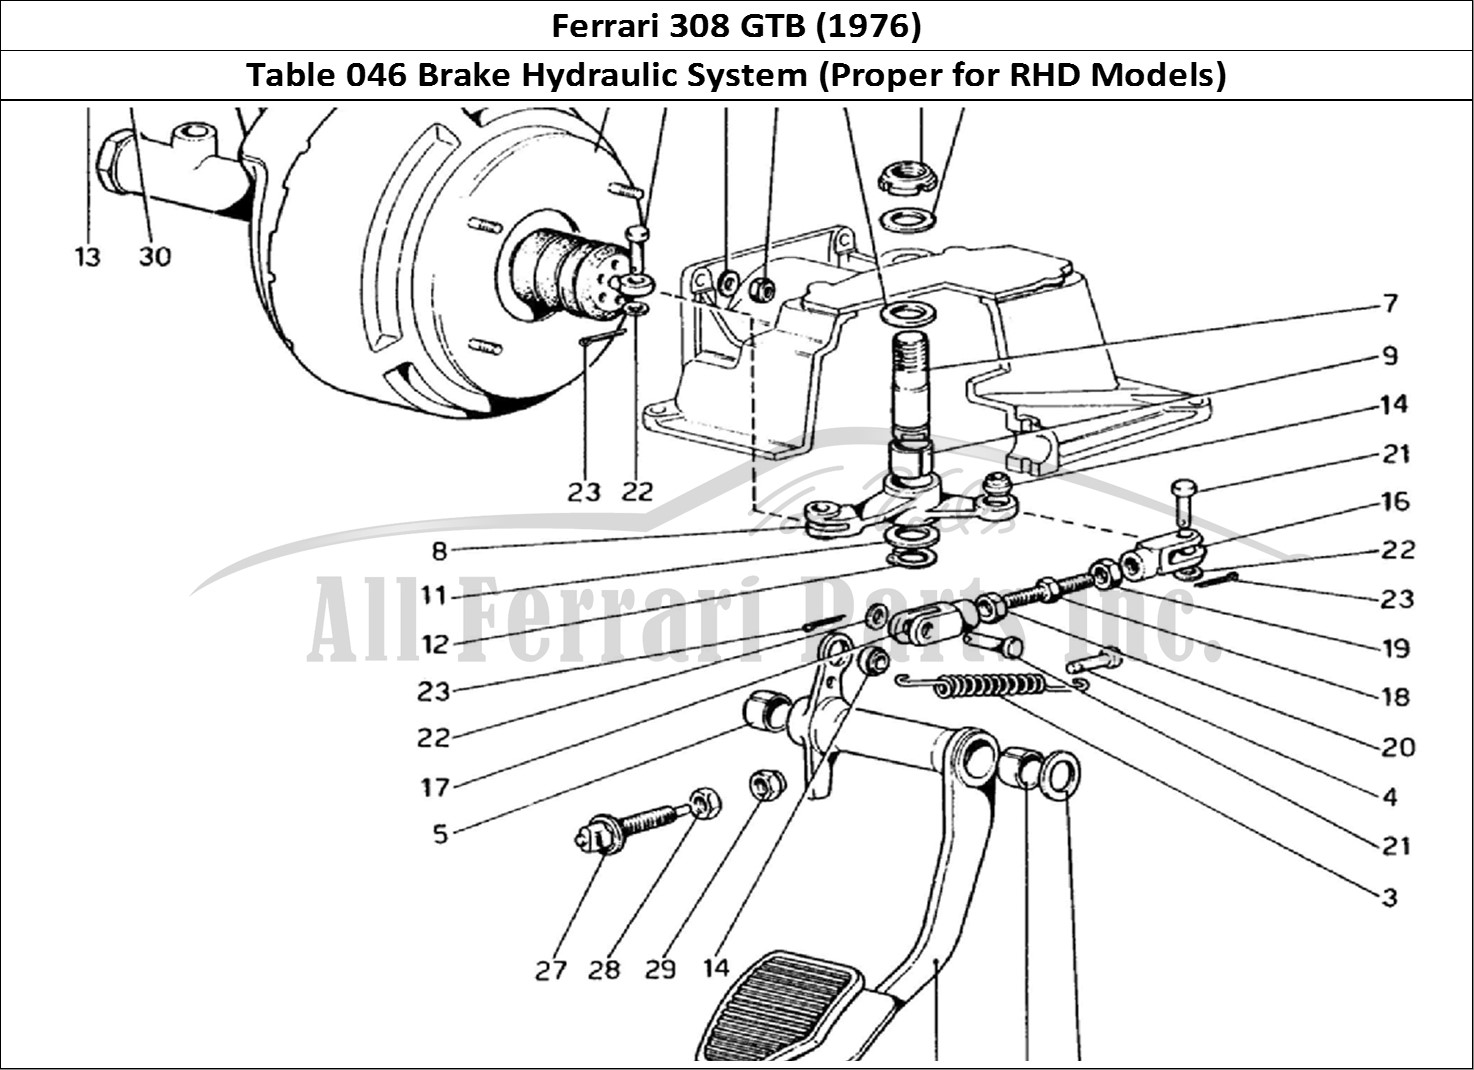 Ferrari Parts Ferrari 308 GTB (1976) Page 046 Brake Hydraulic System (V